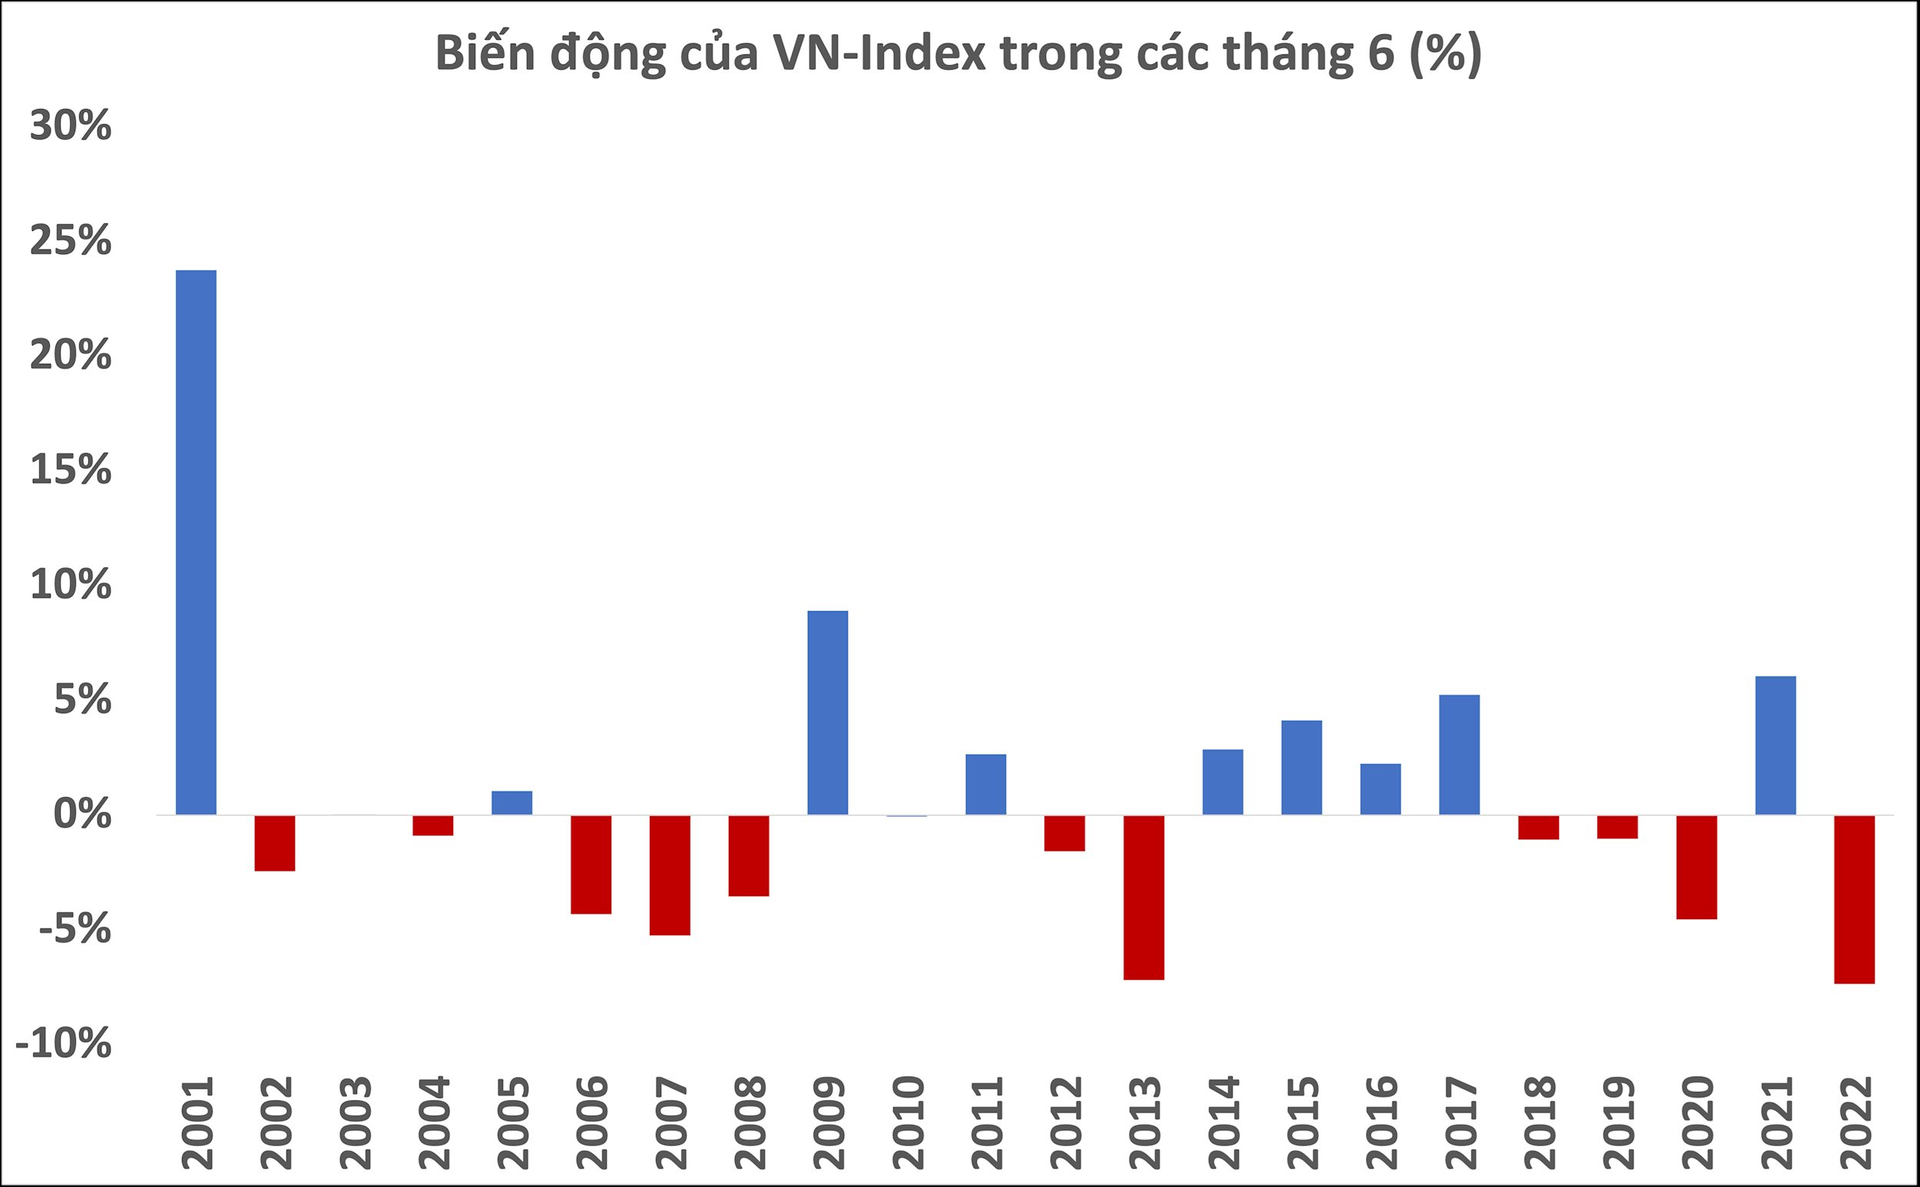 Soi diễn biến thị trường chứng khoán tháng 6: Trong 4/5 năm gần nhất VN-Index đều mất điểm, năm nay liệu có ngược dòng? - Ảnh 2.